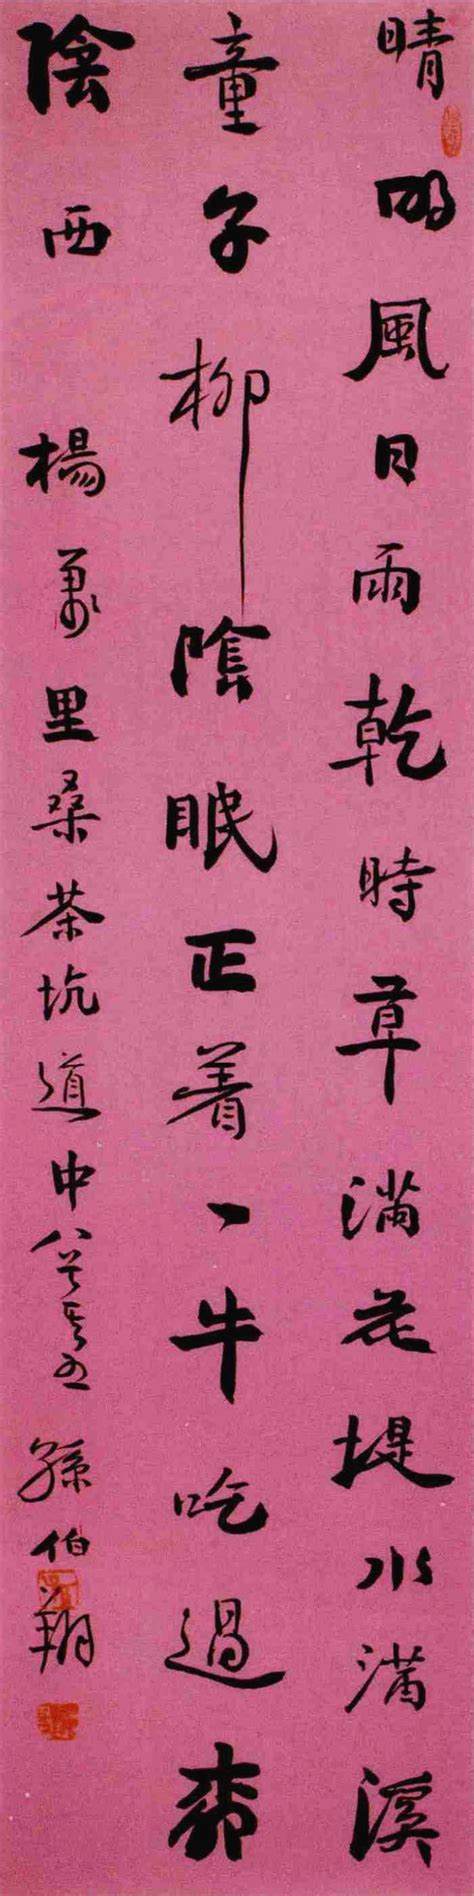 《行书杨万里诗轴》 - 中国书画网